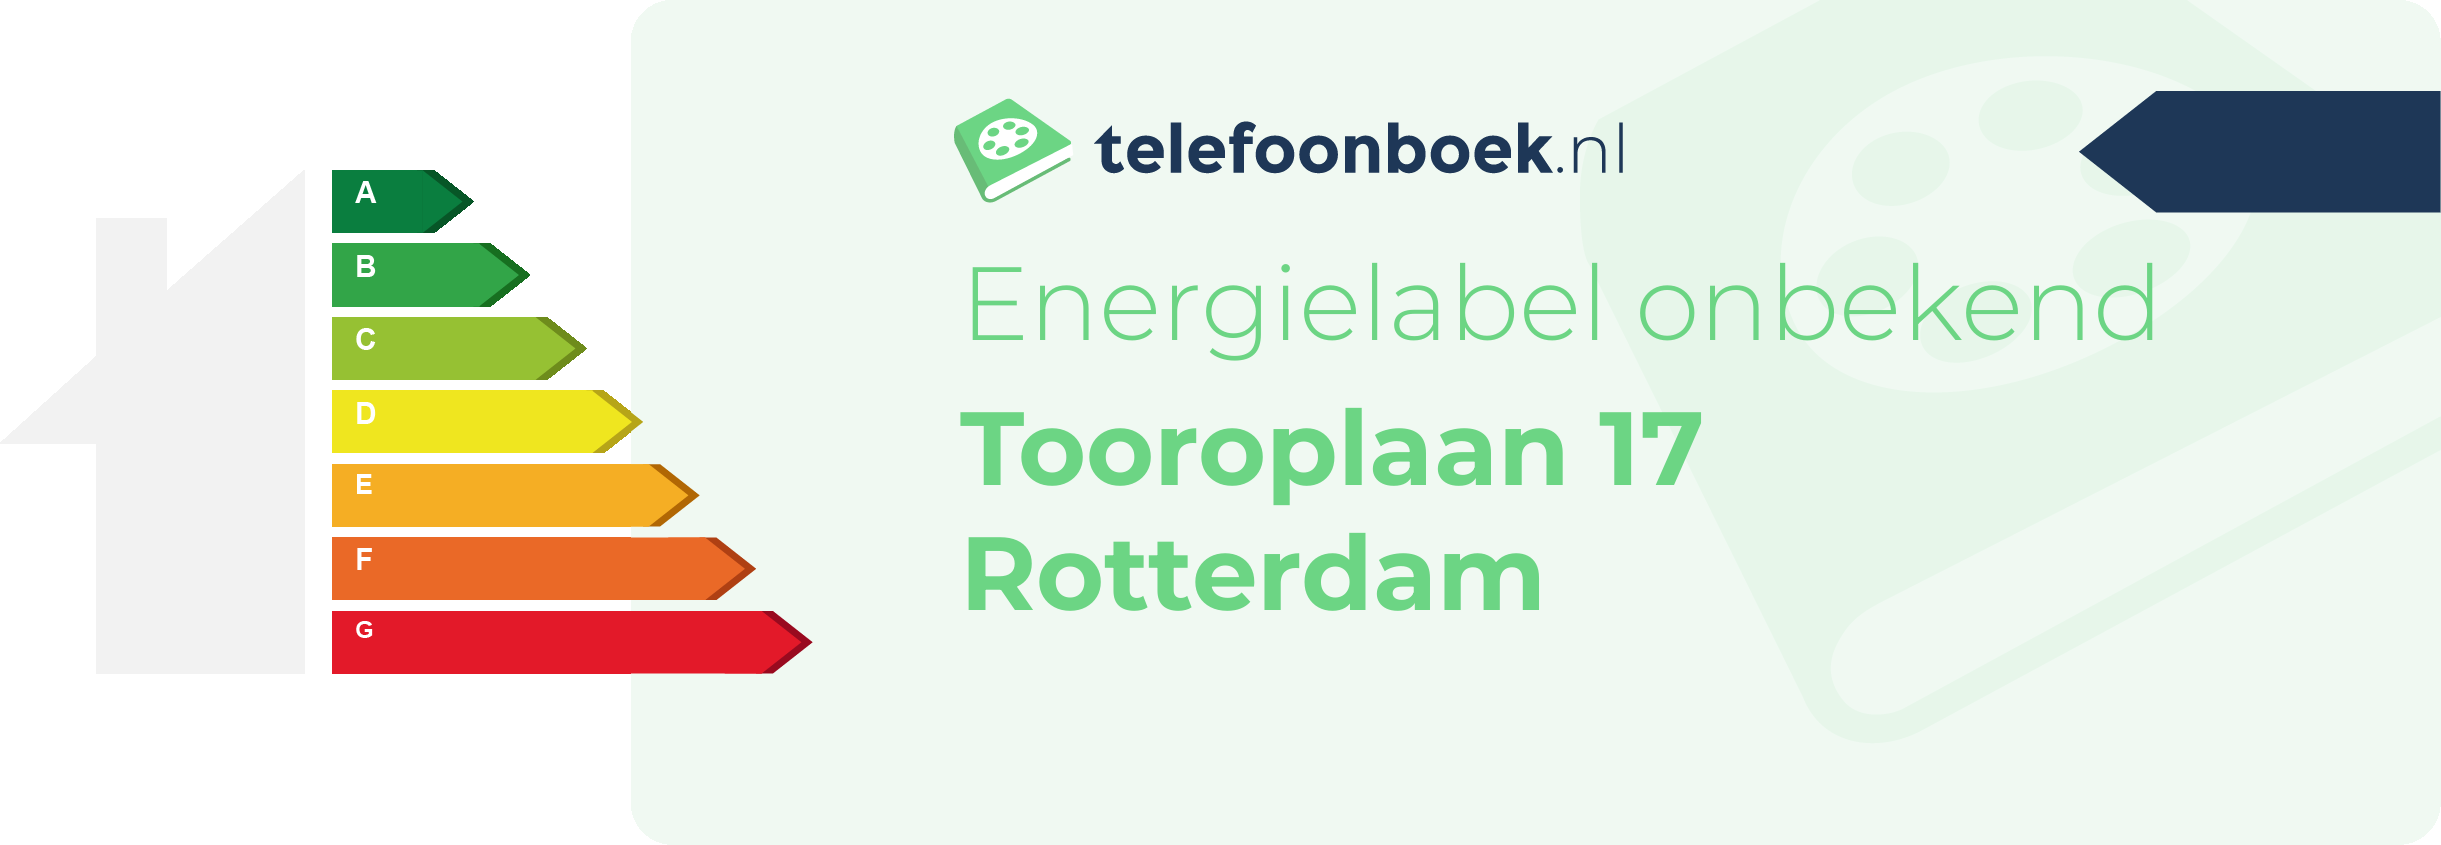 Energielabel Tooroplaan 17 Rotterdam